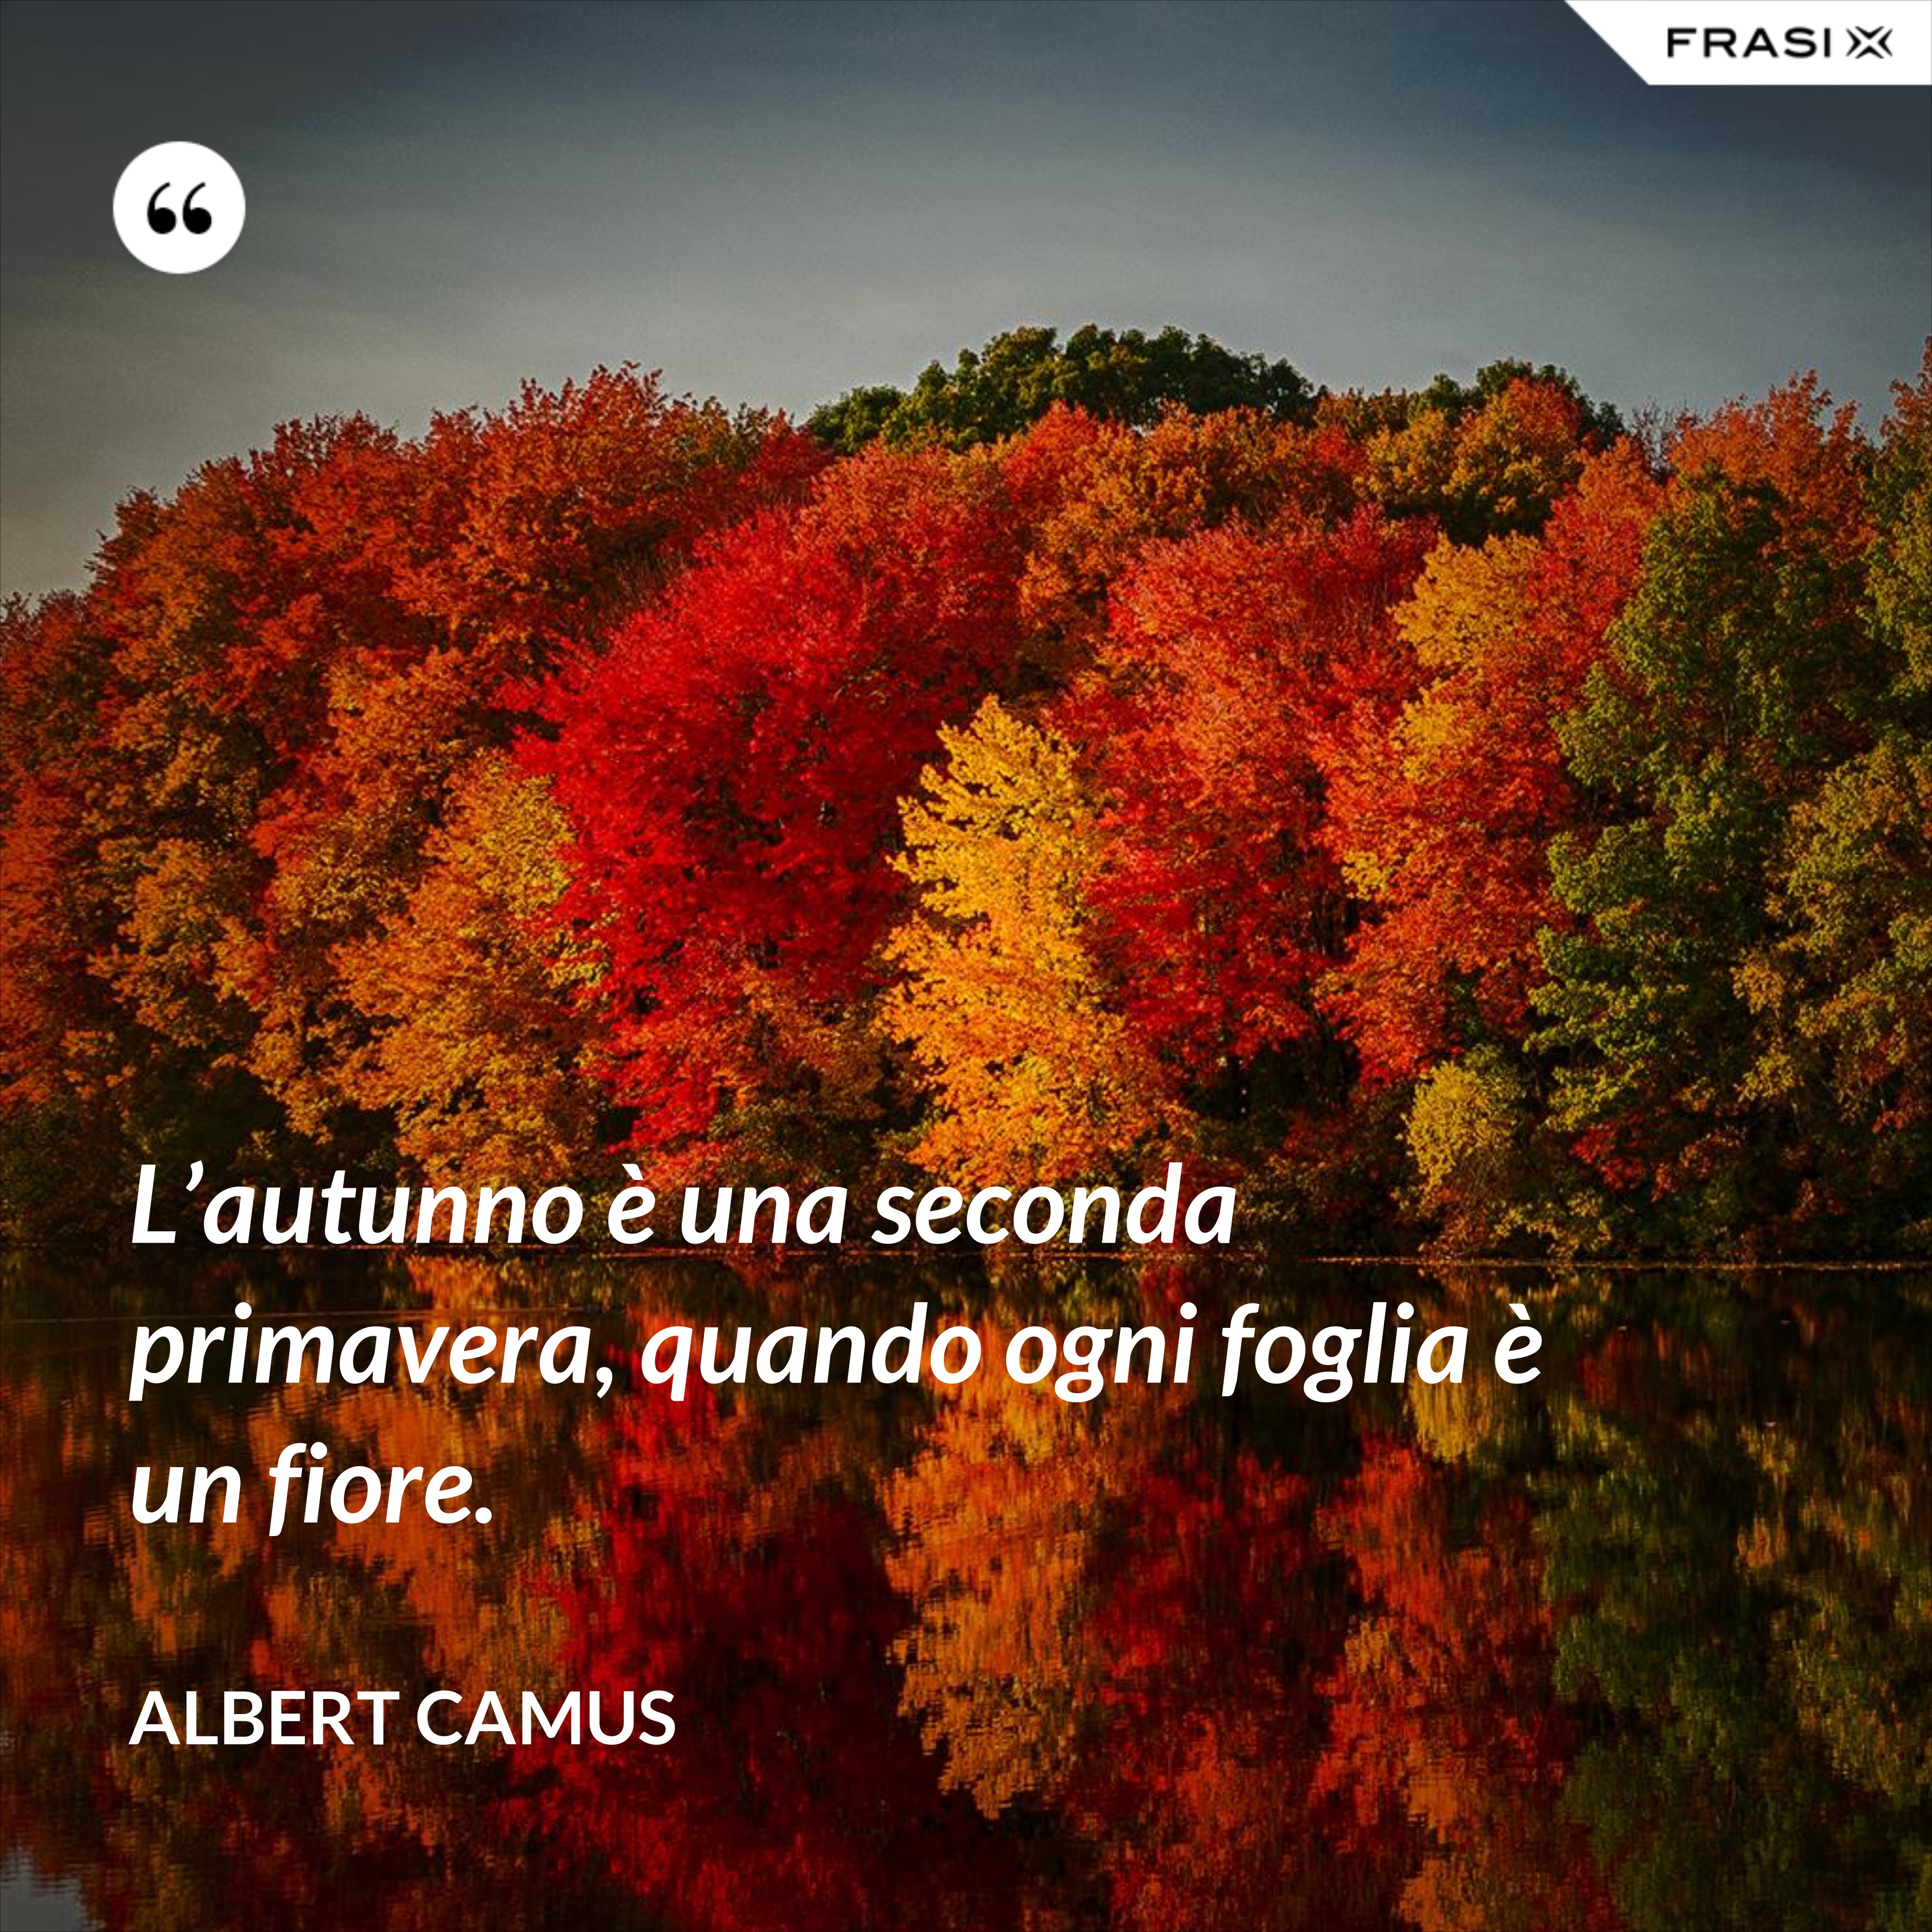 L’autunno è una seconda primavera, quando ogni foglia è un fiore. - Albert Camus